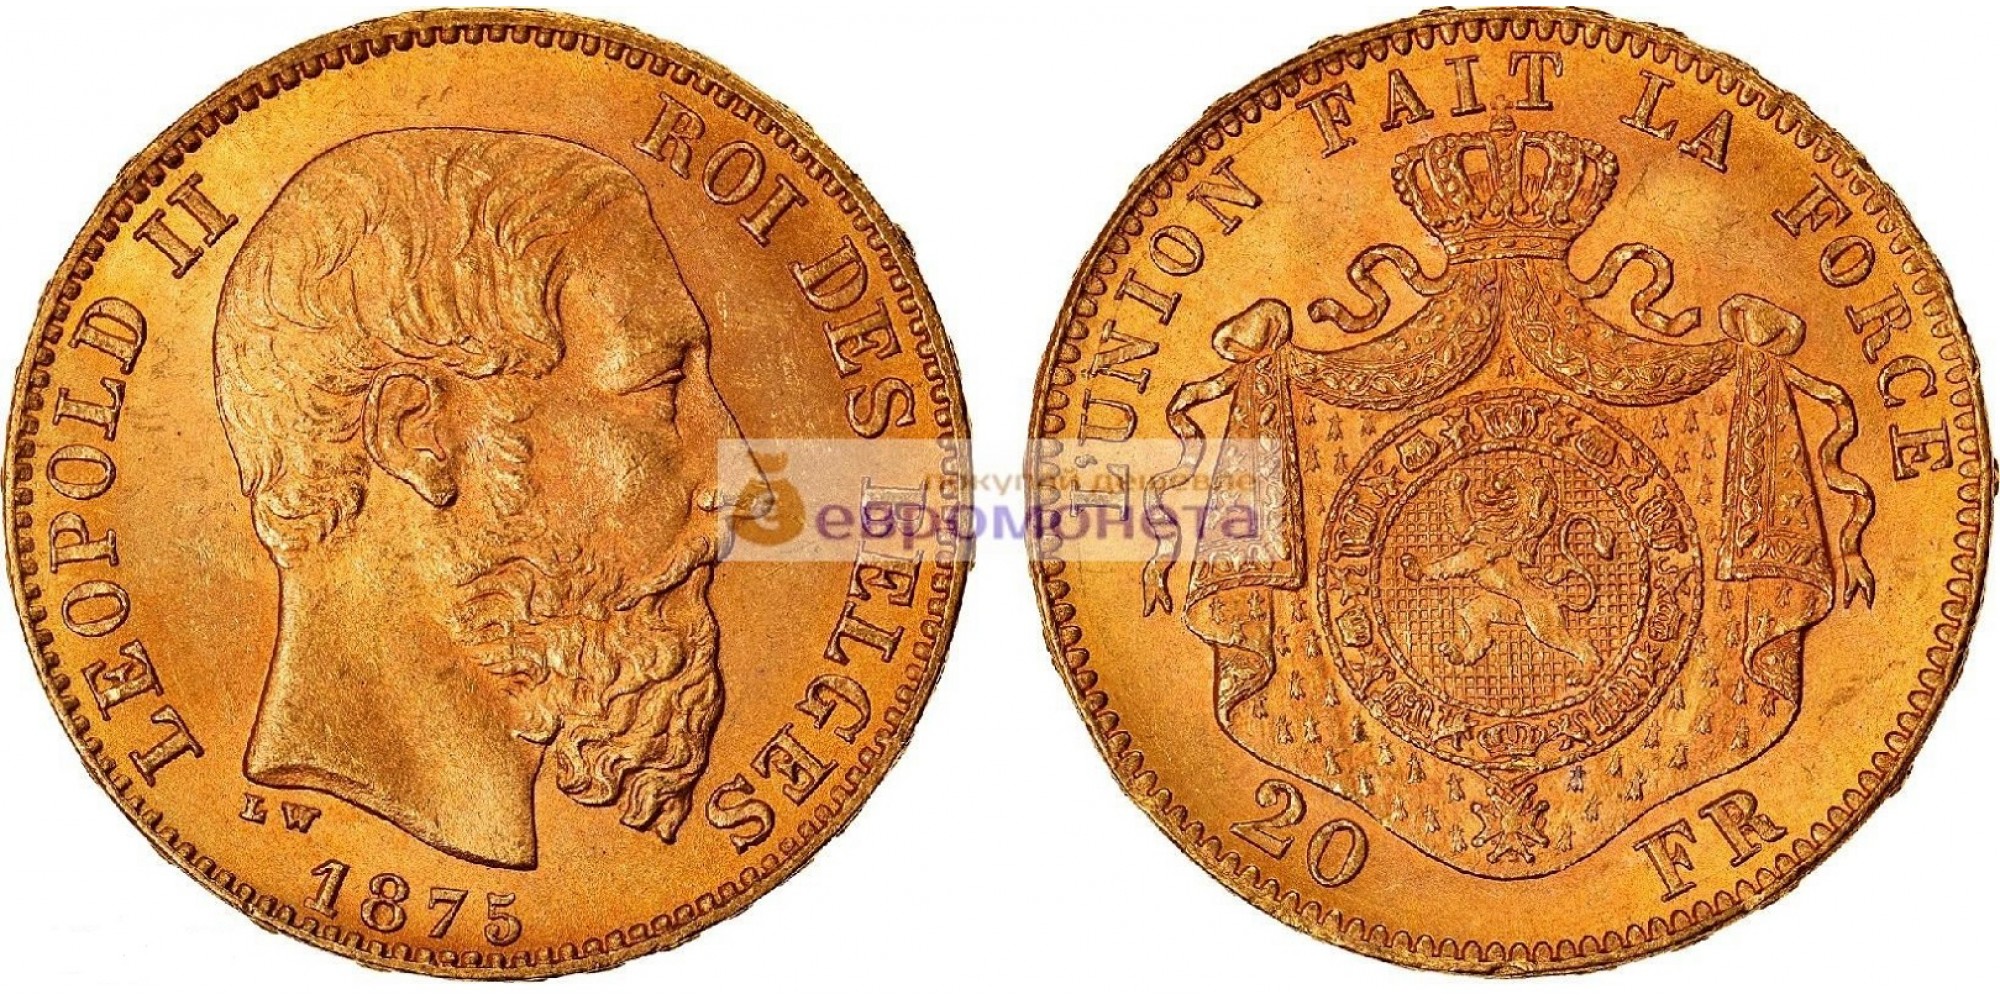 Бельгия 20 франков 1875 год. Король Леопольд II. Золото. АЦ / Unc